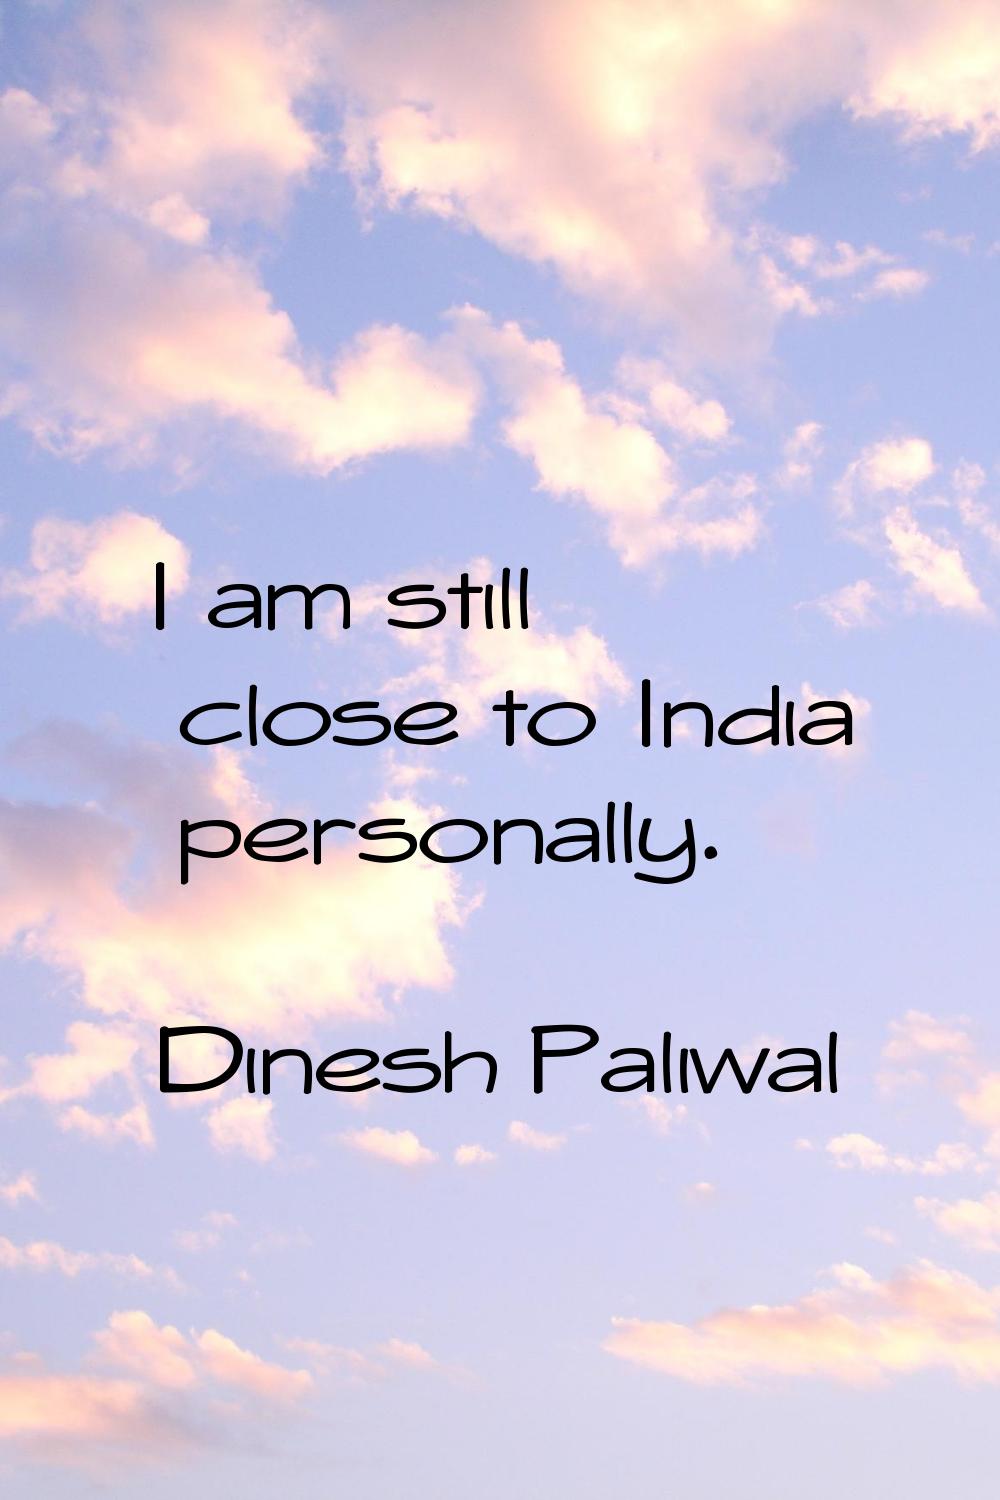 I am still close to India personally.